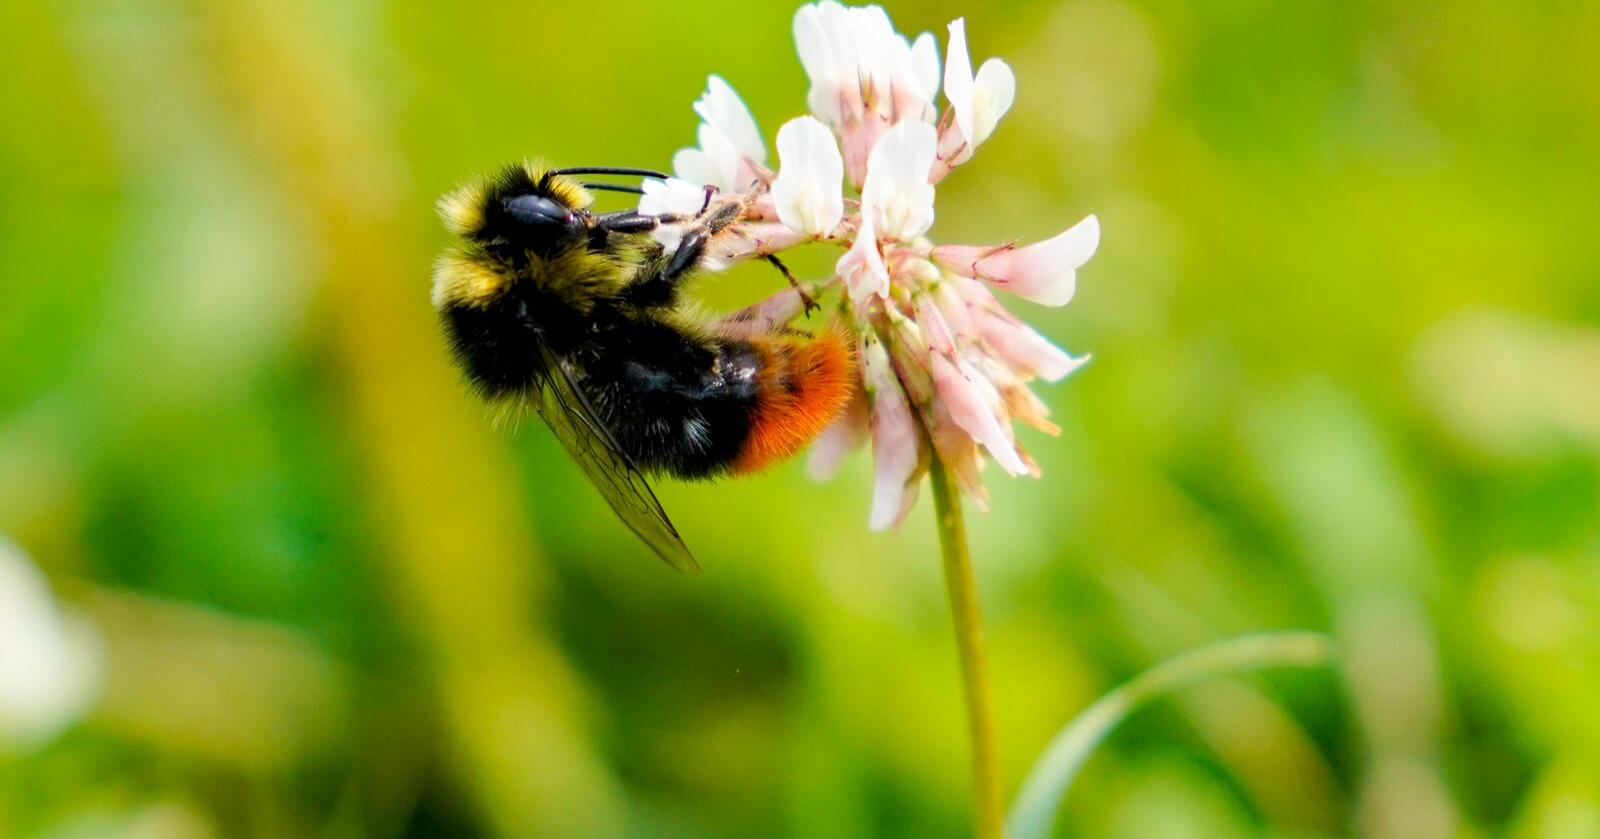 Dei pollinerande insekta er truga av at me bygger ned og forureinar leveområda deira, endrar klimaet, intensiverer jordbruket og introduserer framande artar, skriv Gaute Eiterjord. Foto: Fredrik Hagen / NTB